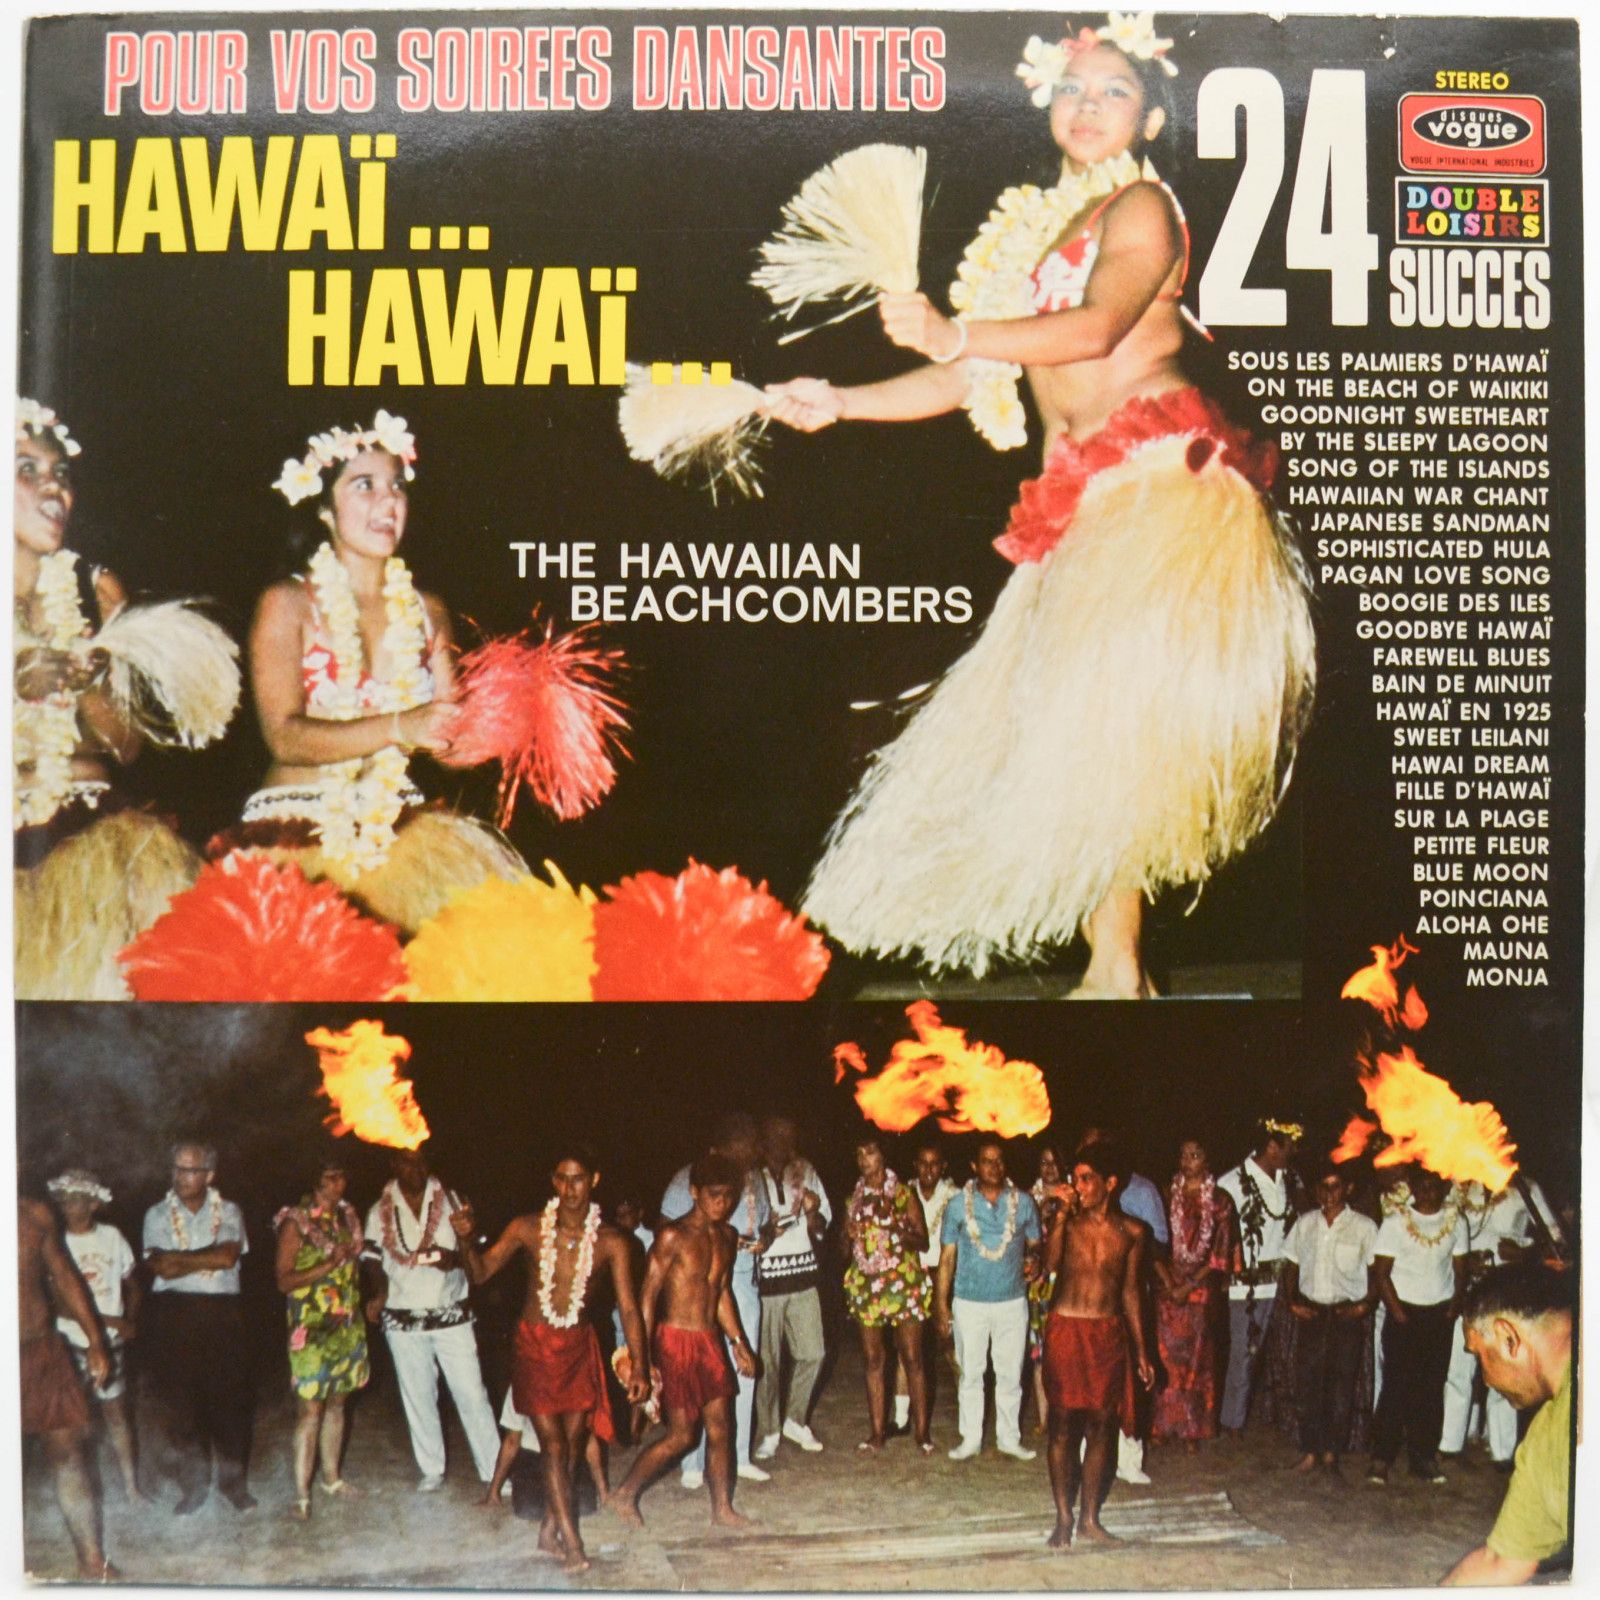 Hawaiian Beachcombers — Hawaïï... Hawaïï... (2LP), 1976